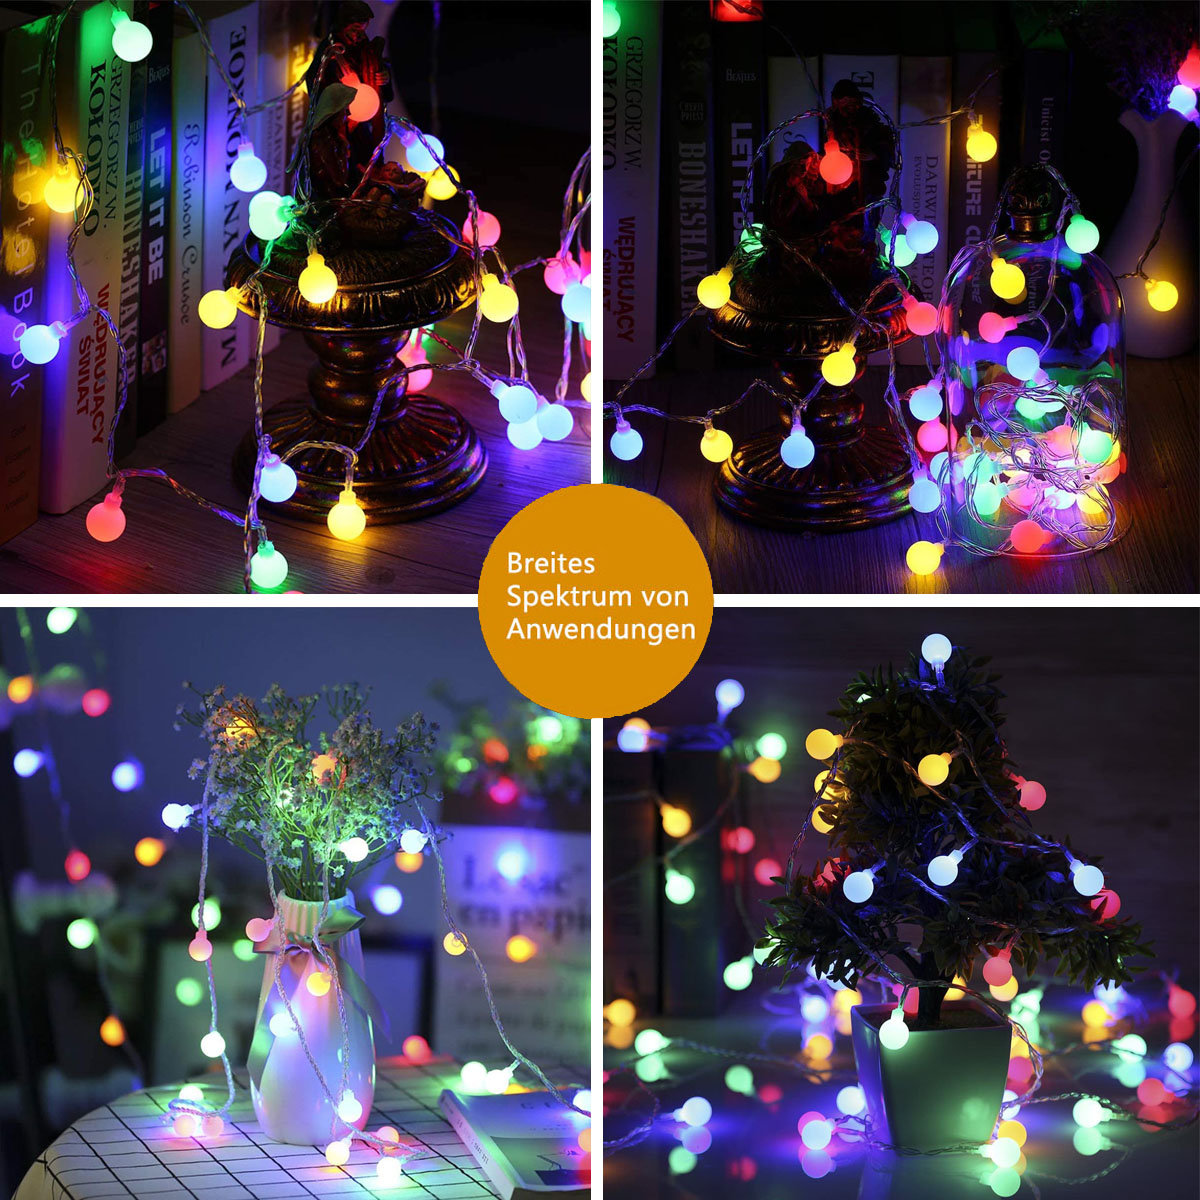 50 kleine weiße DEDOM Lichter Lichterketten, Multicolor, farbig LED Solare Lichterketten, Kugellampe,7M